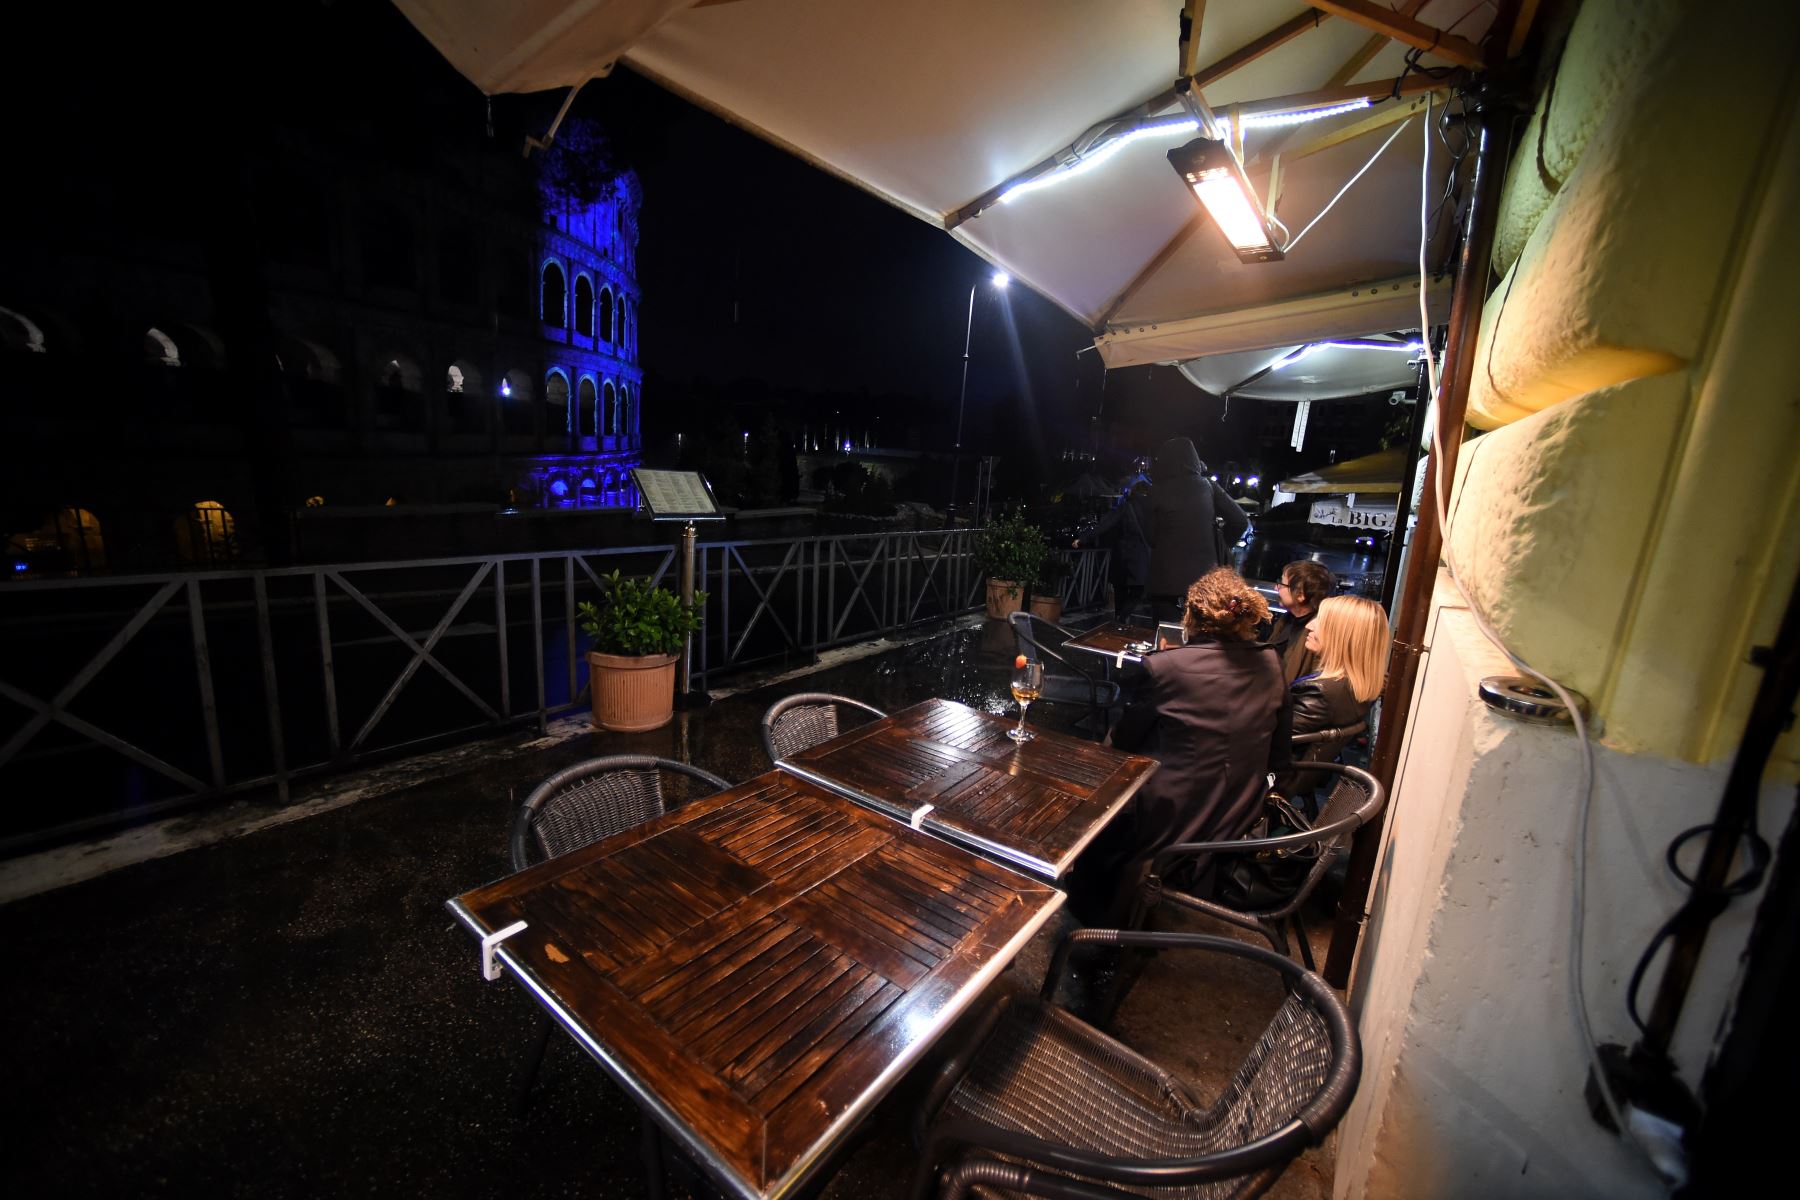 Las personas visitan restaurantes junto al coliseo que se ilumina por el 75 aniversario de la FAO, en el centro de Roma. Foto: AFP